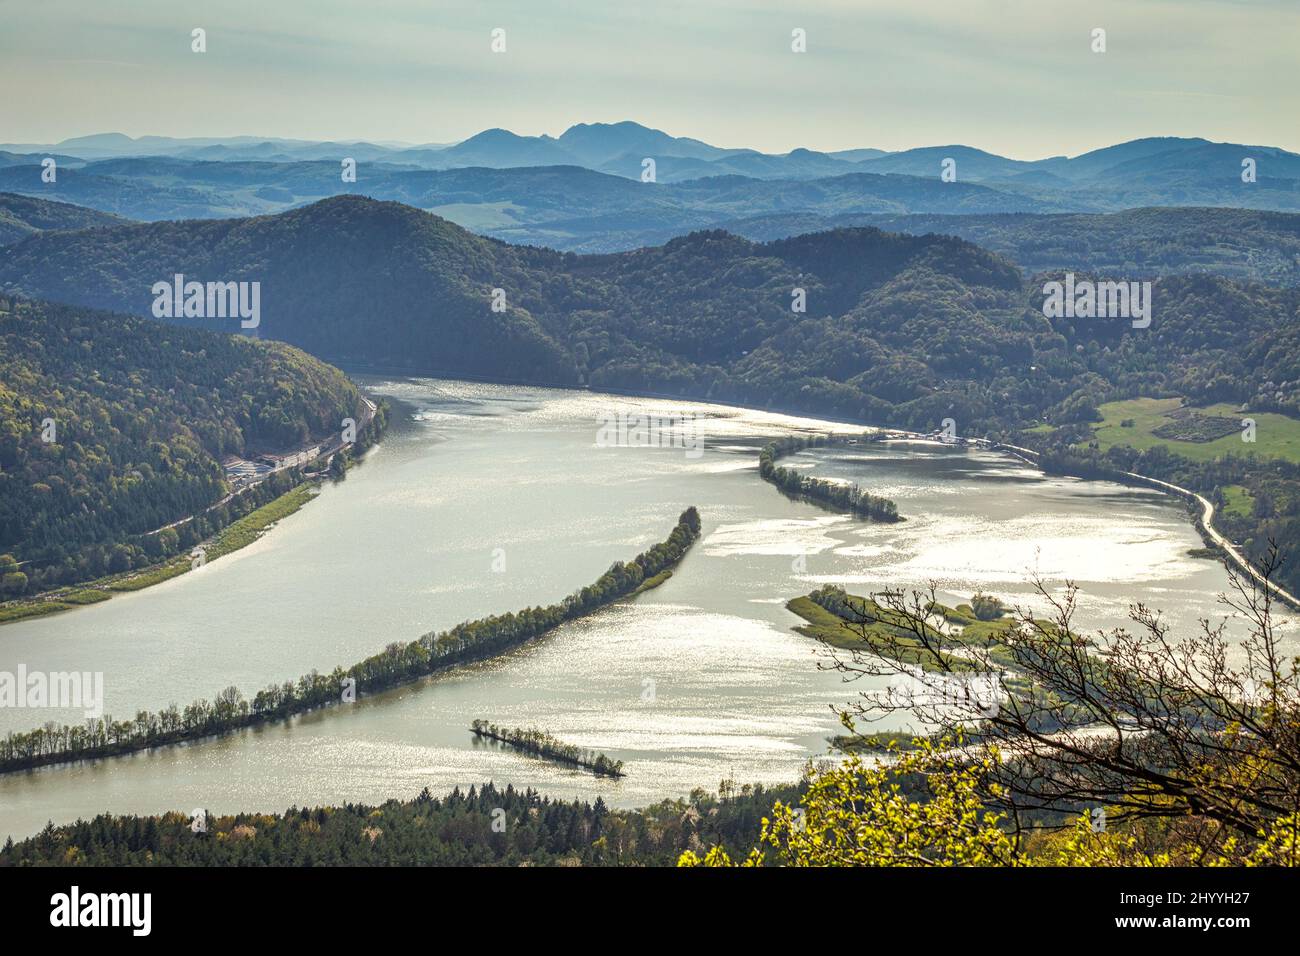 Vista della diga di Nosice sul fiume Vah dalla collina di Klapy vicino alla città di Povazska Bystrica nella Slovacchia nord-occidentale, Europa. Foto Stock